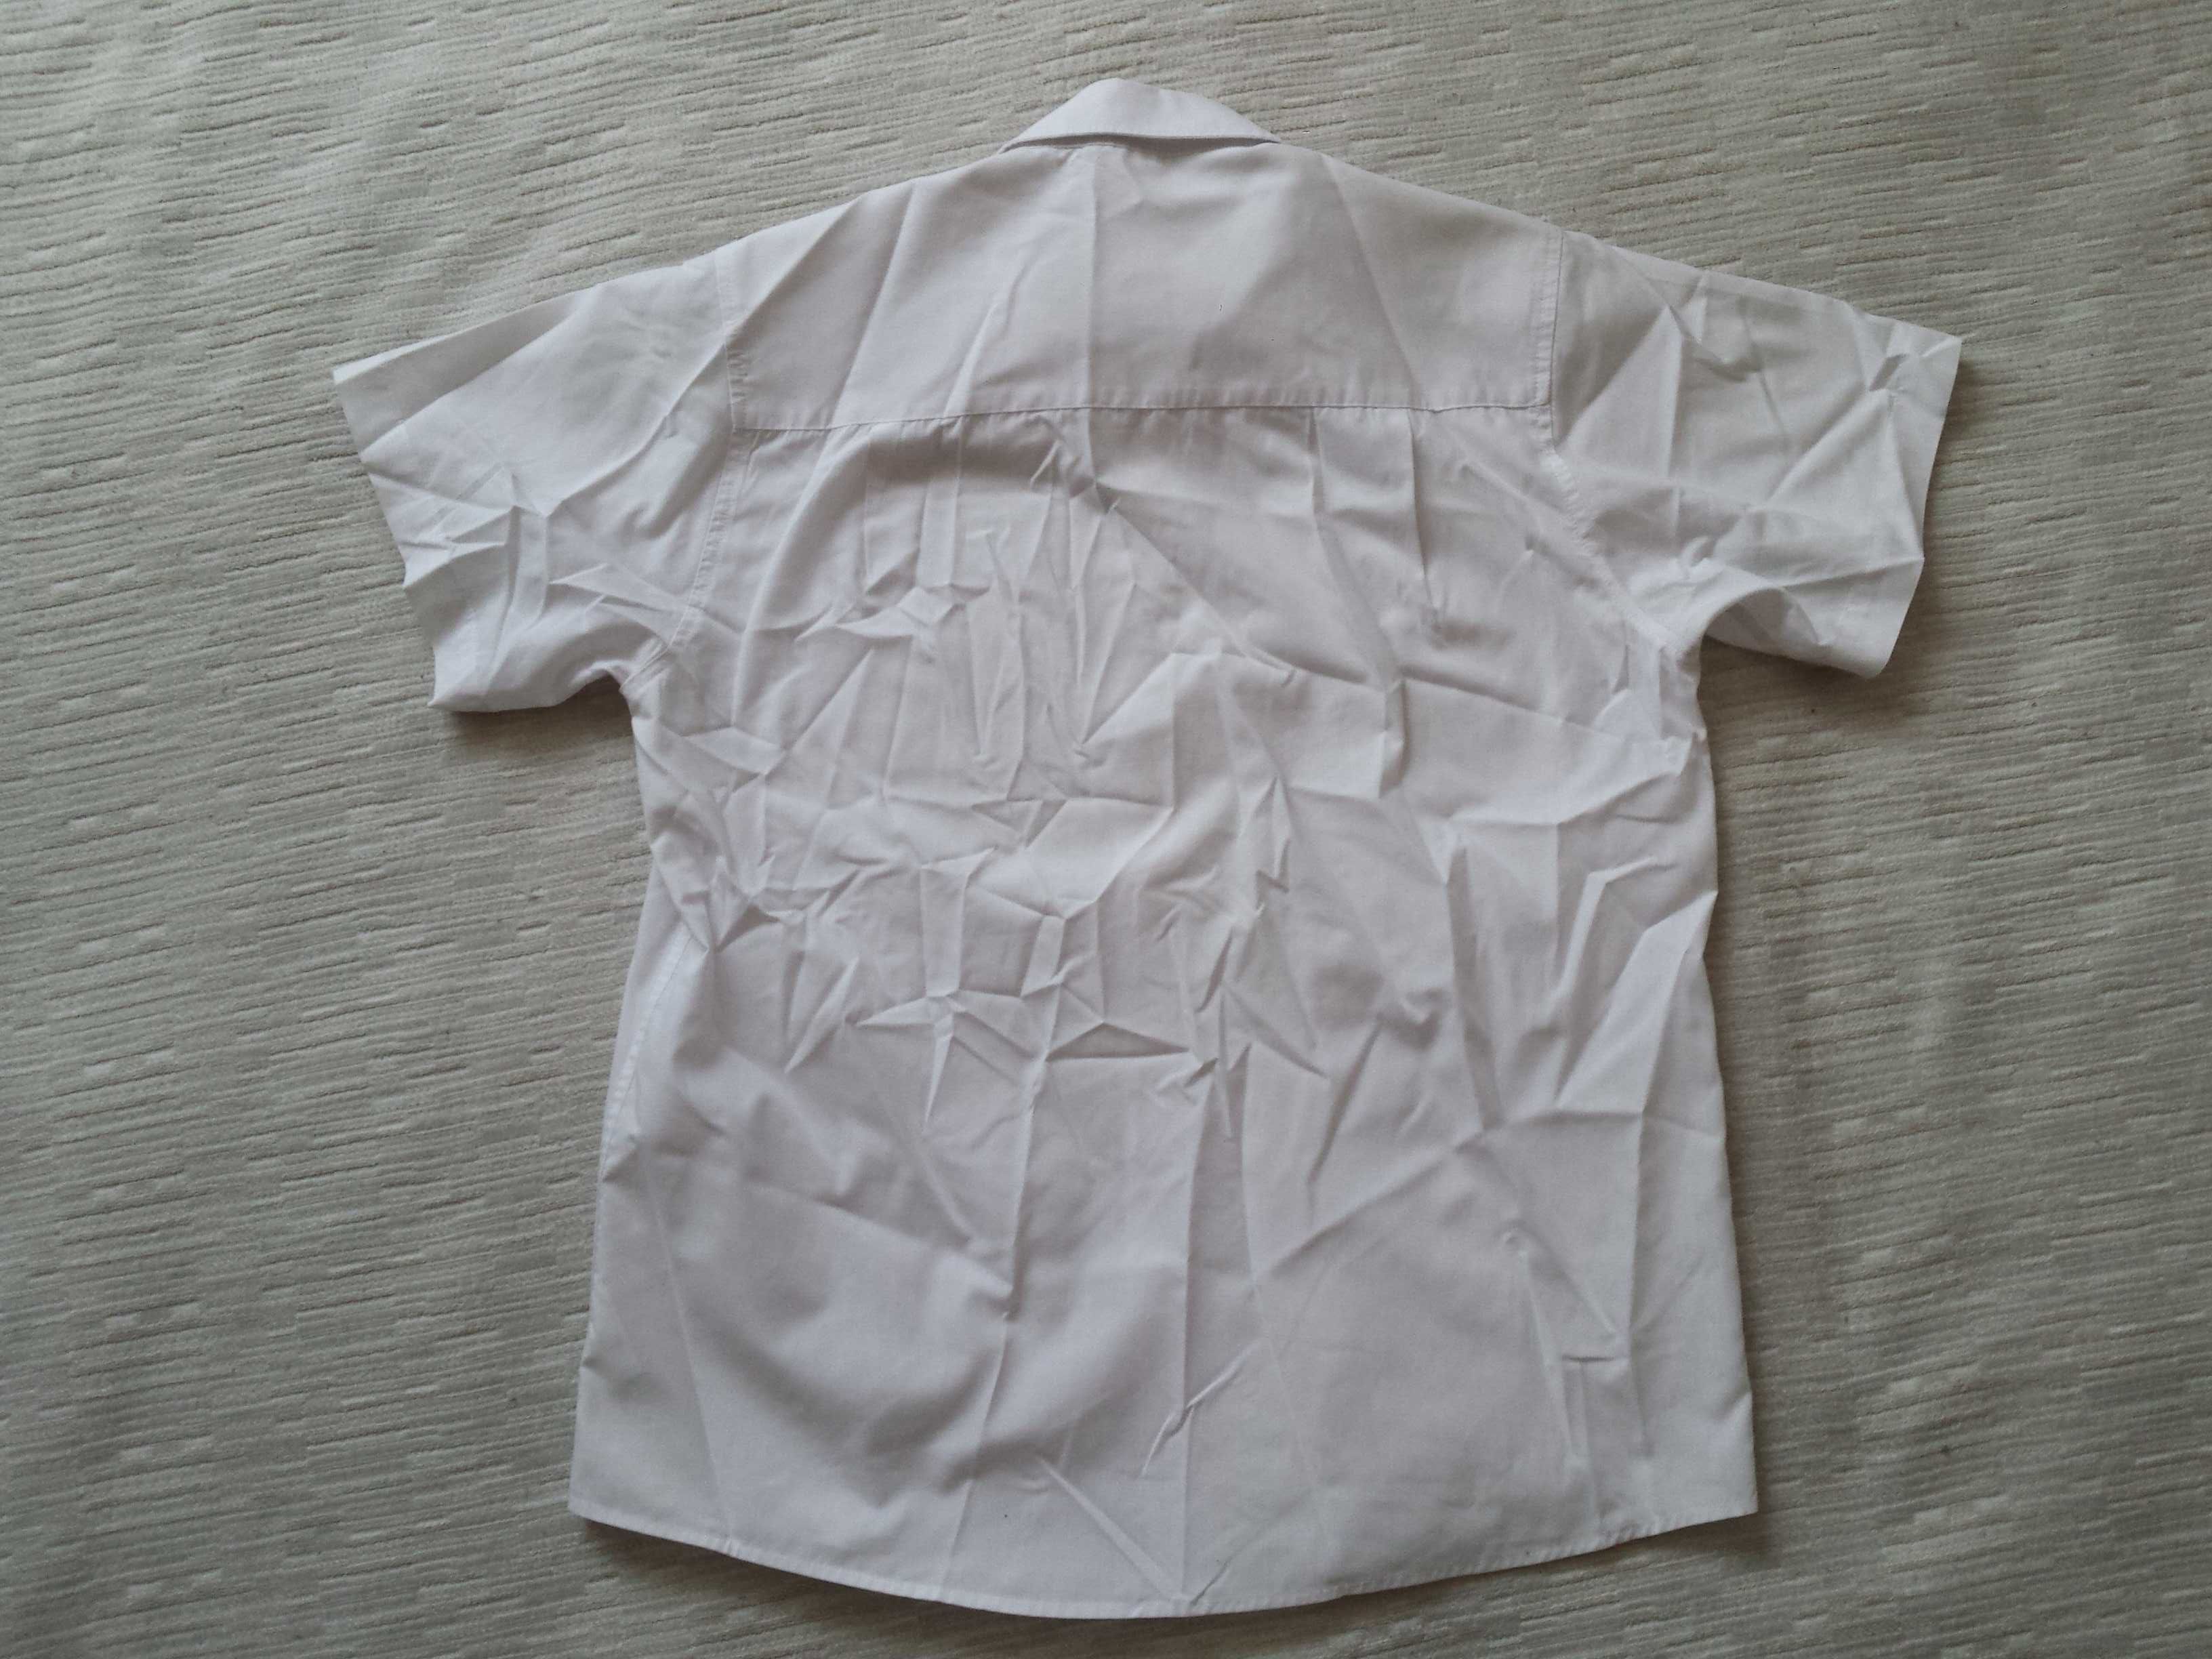 COOLCLUB koszula roz. M (wg metki 164), krótki rękaw, bawełna, biała